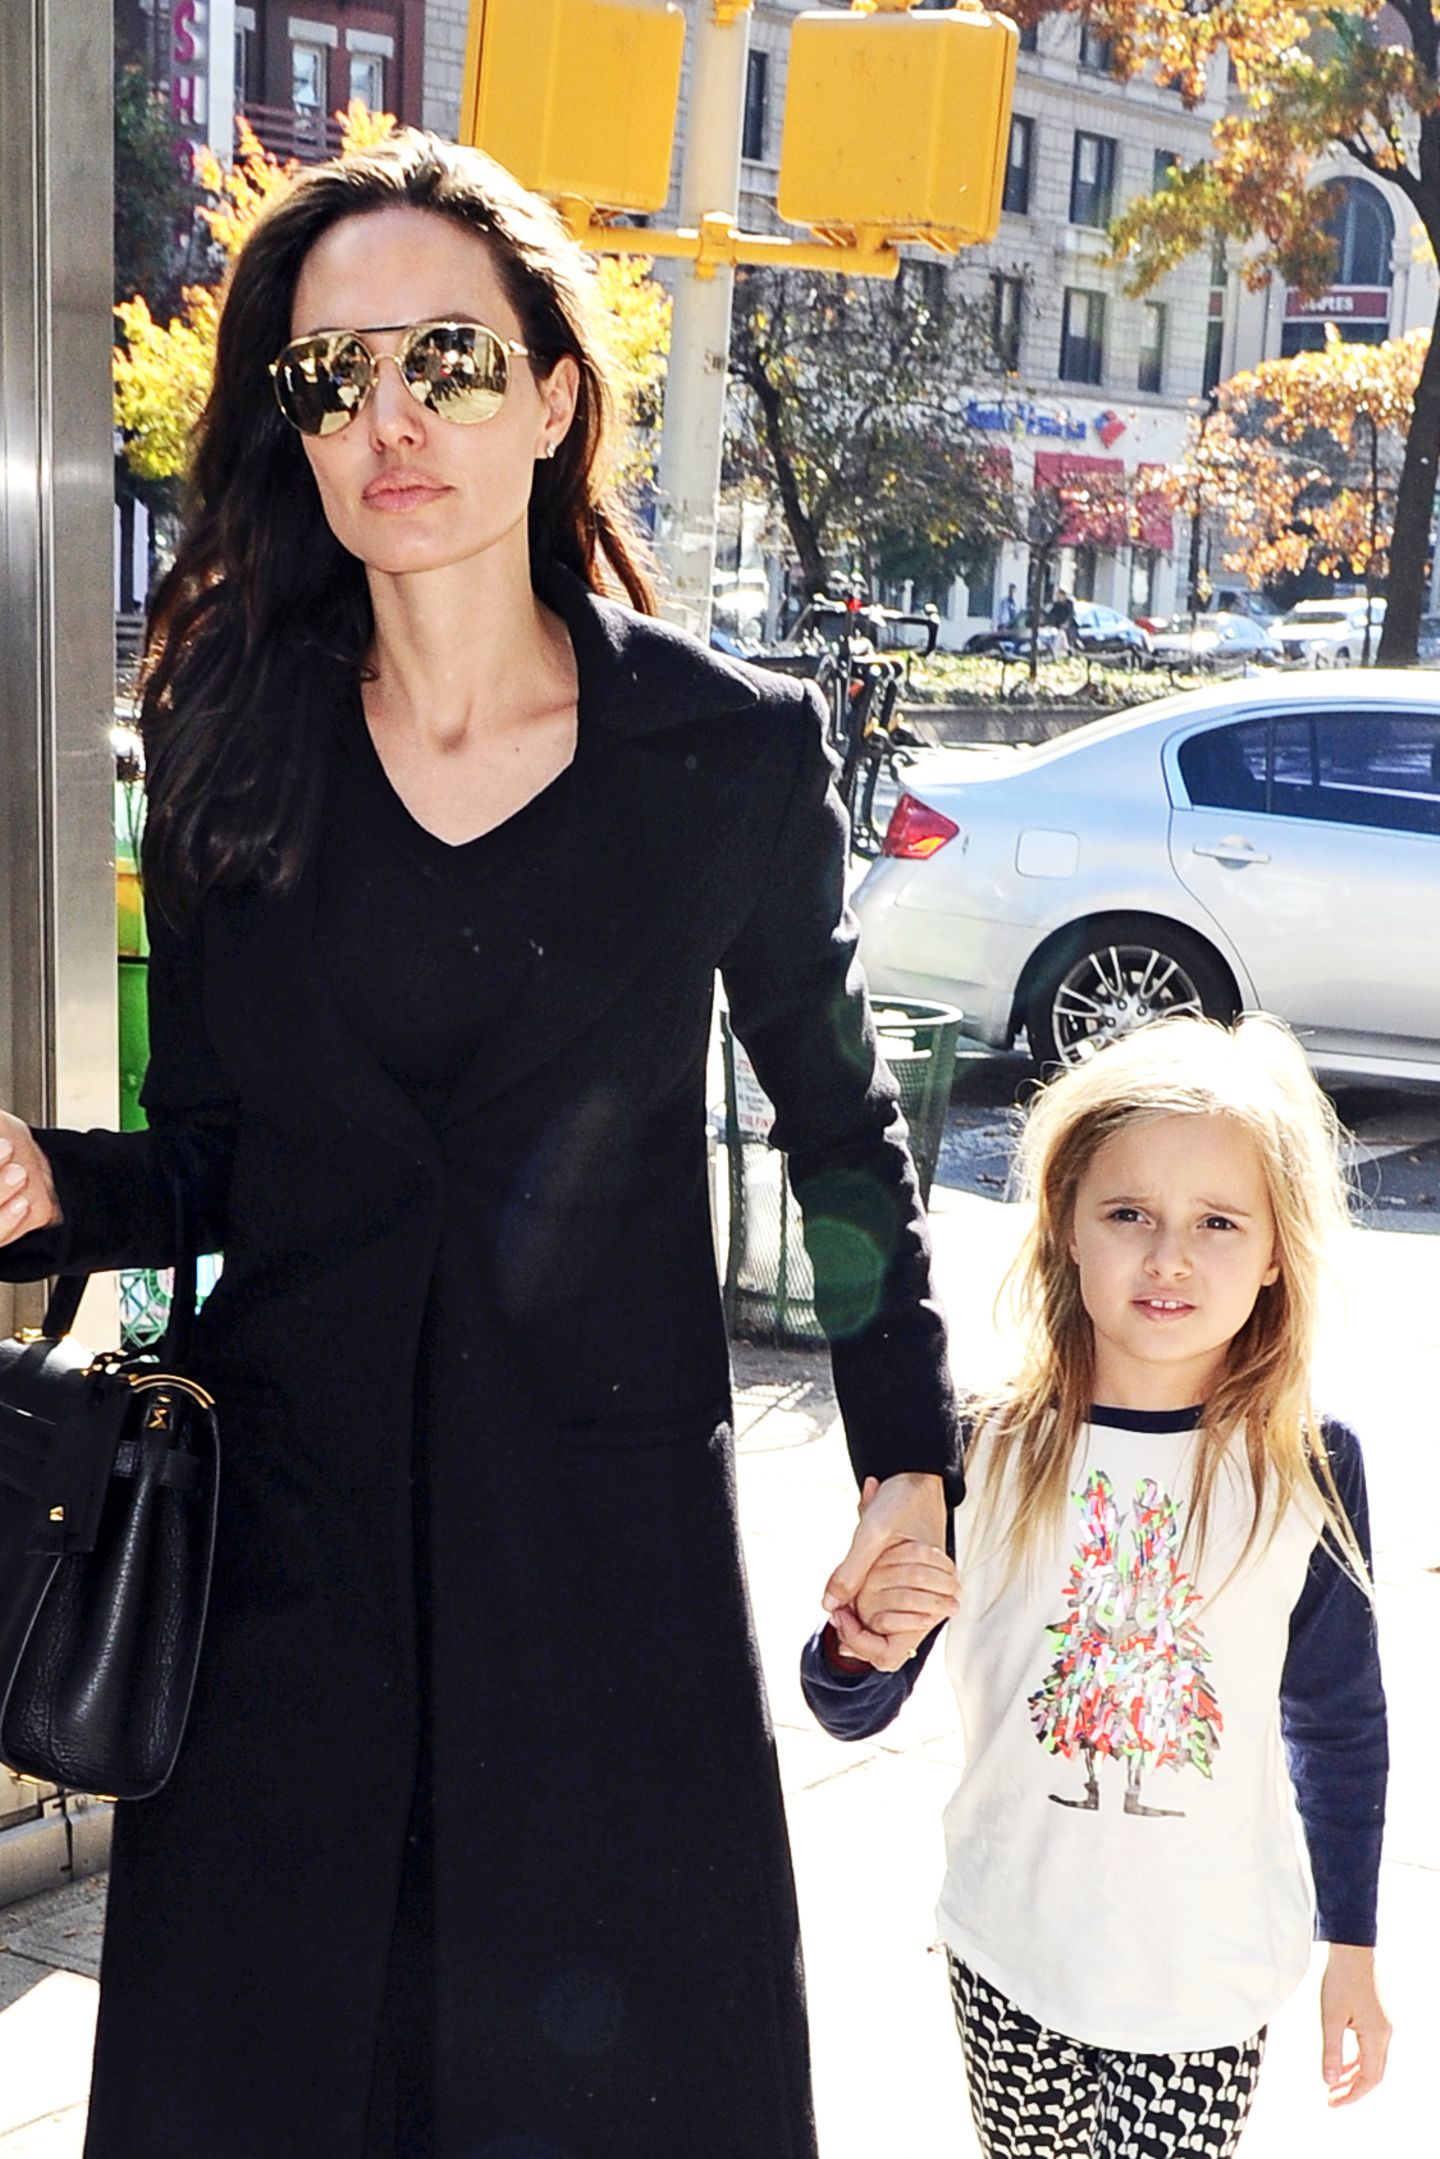 Bereits mit sieben Jahren ist Vivienne Jolie-Pitt eine leidenschaftliche Shopping-Begleiterin ihrer berühmten Mutter Angelina Jolie gewesen. Ein Umstand, der sich scheinbar nicht verändert hat – optisch hat sich bei Vivienne aber einiges getan. 